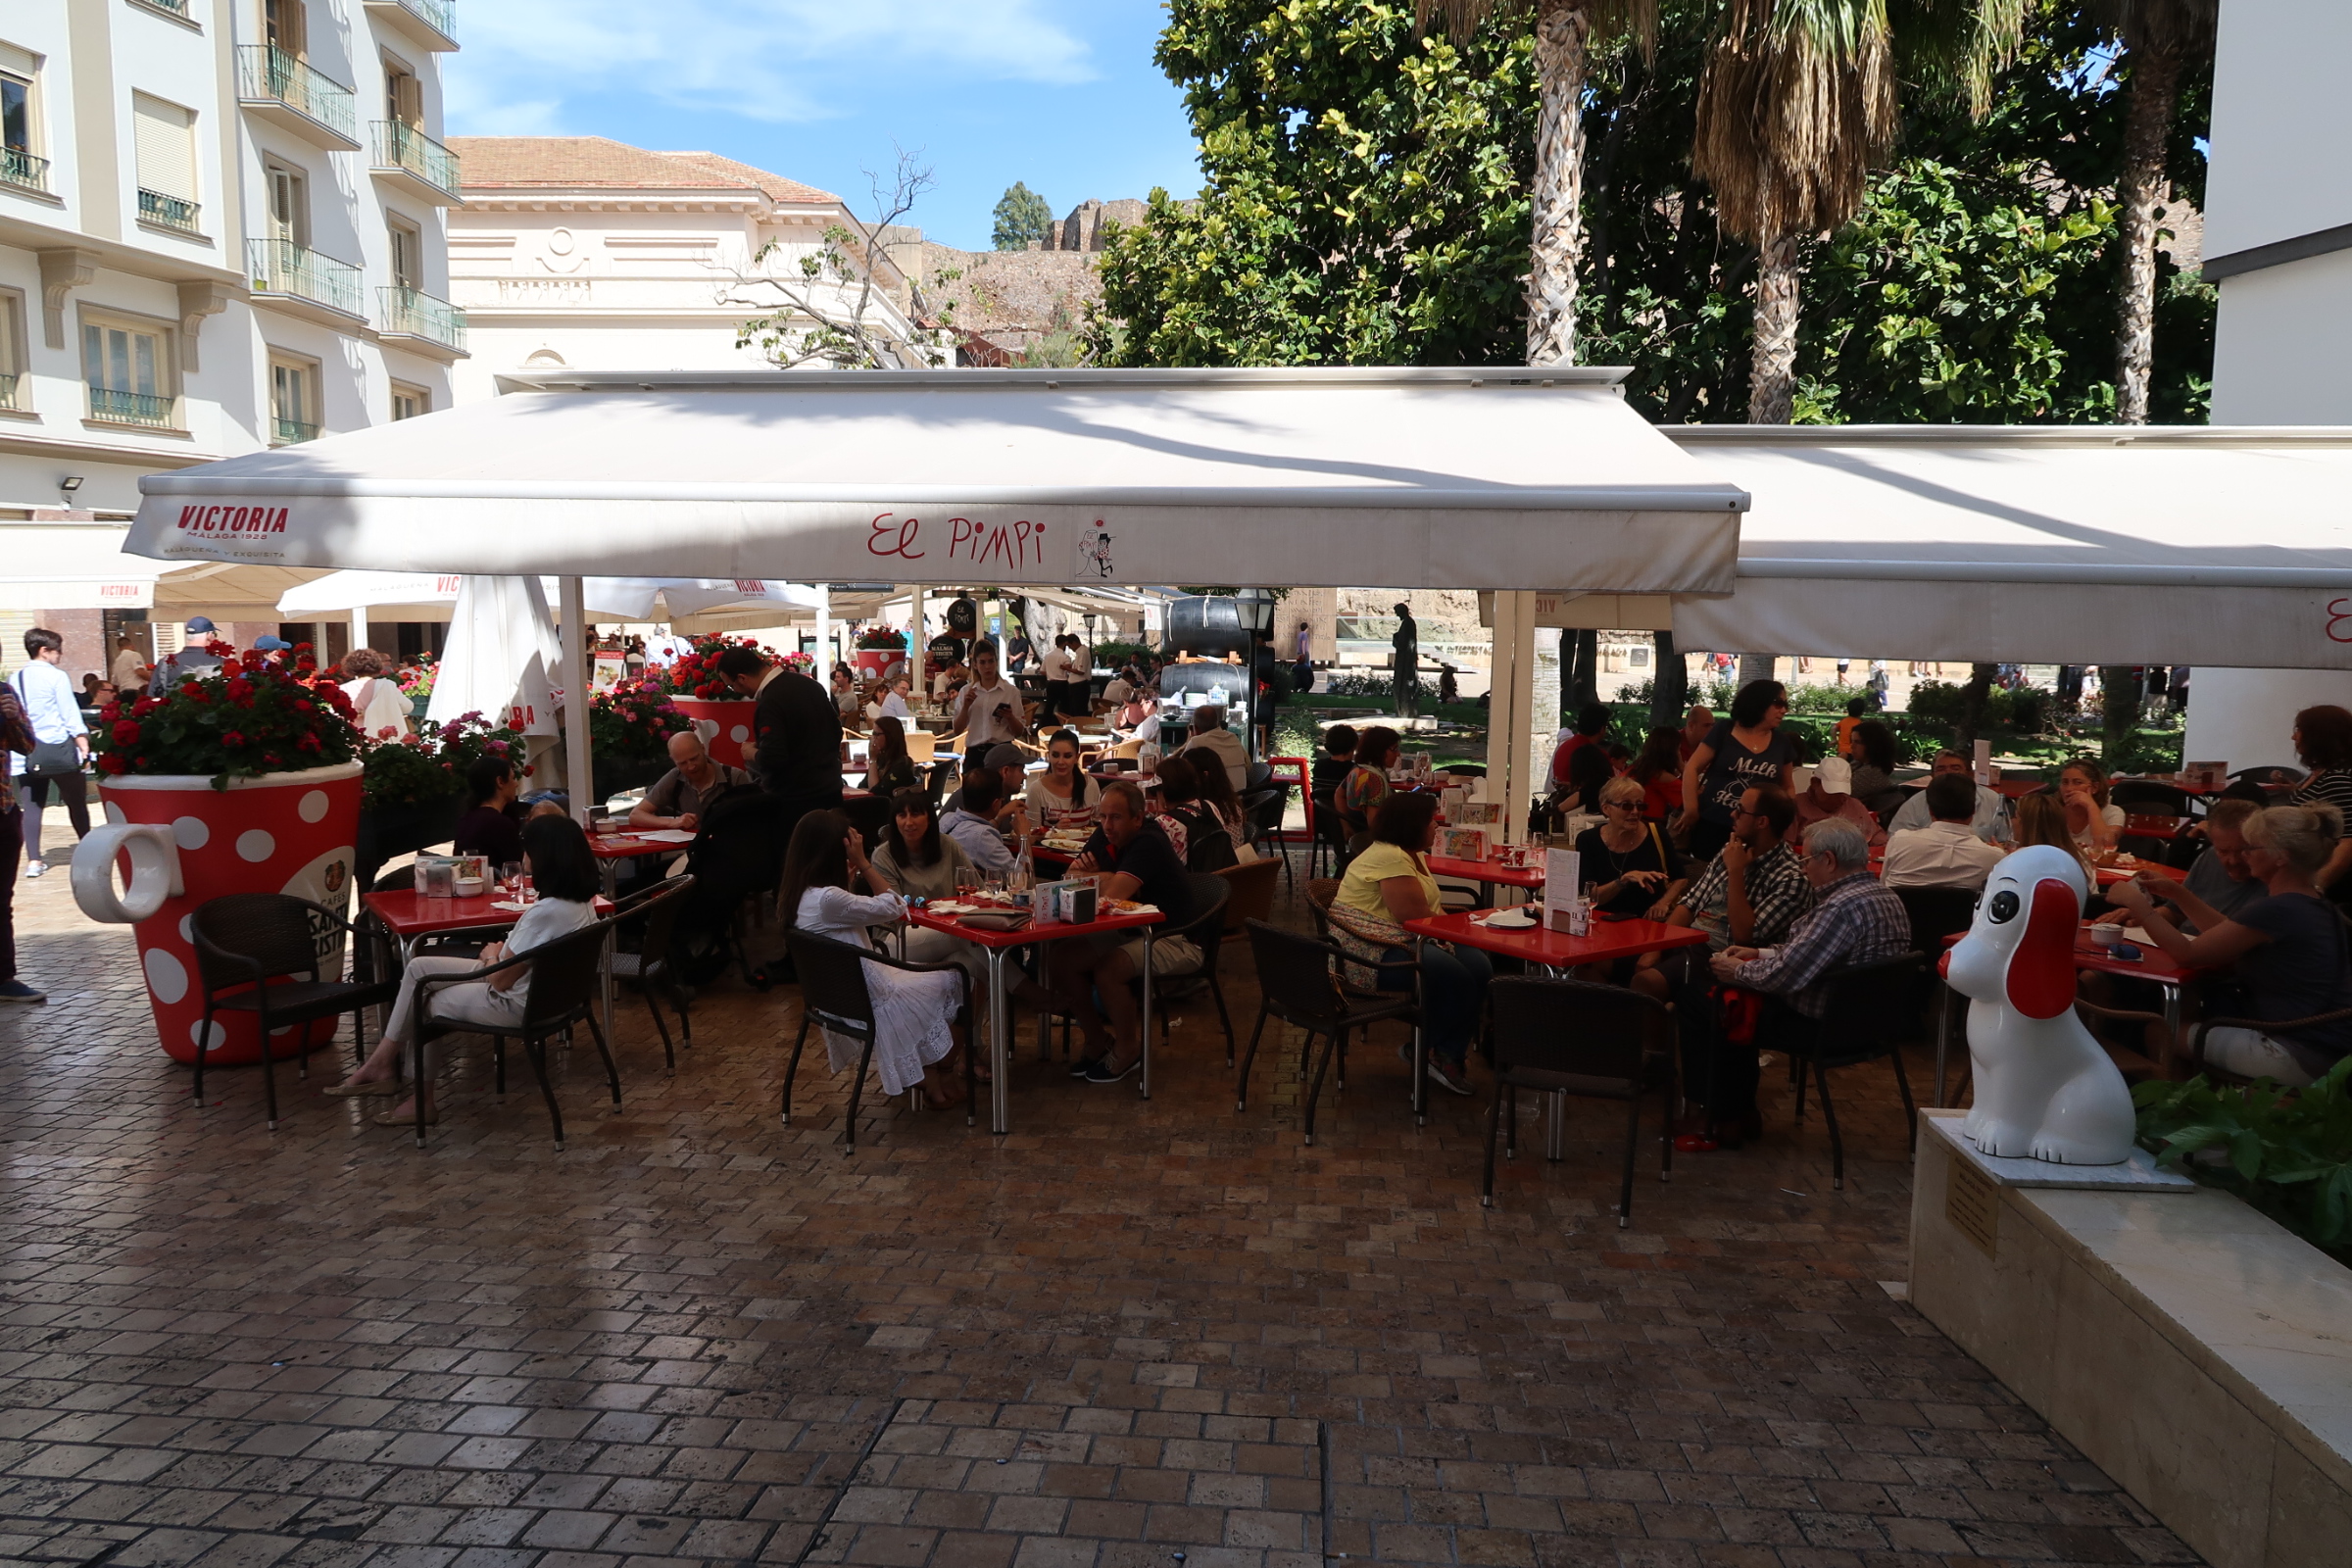 Restaurants in Malaga